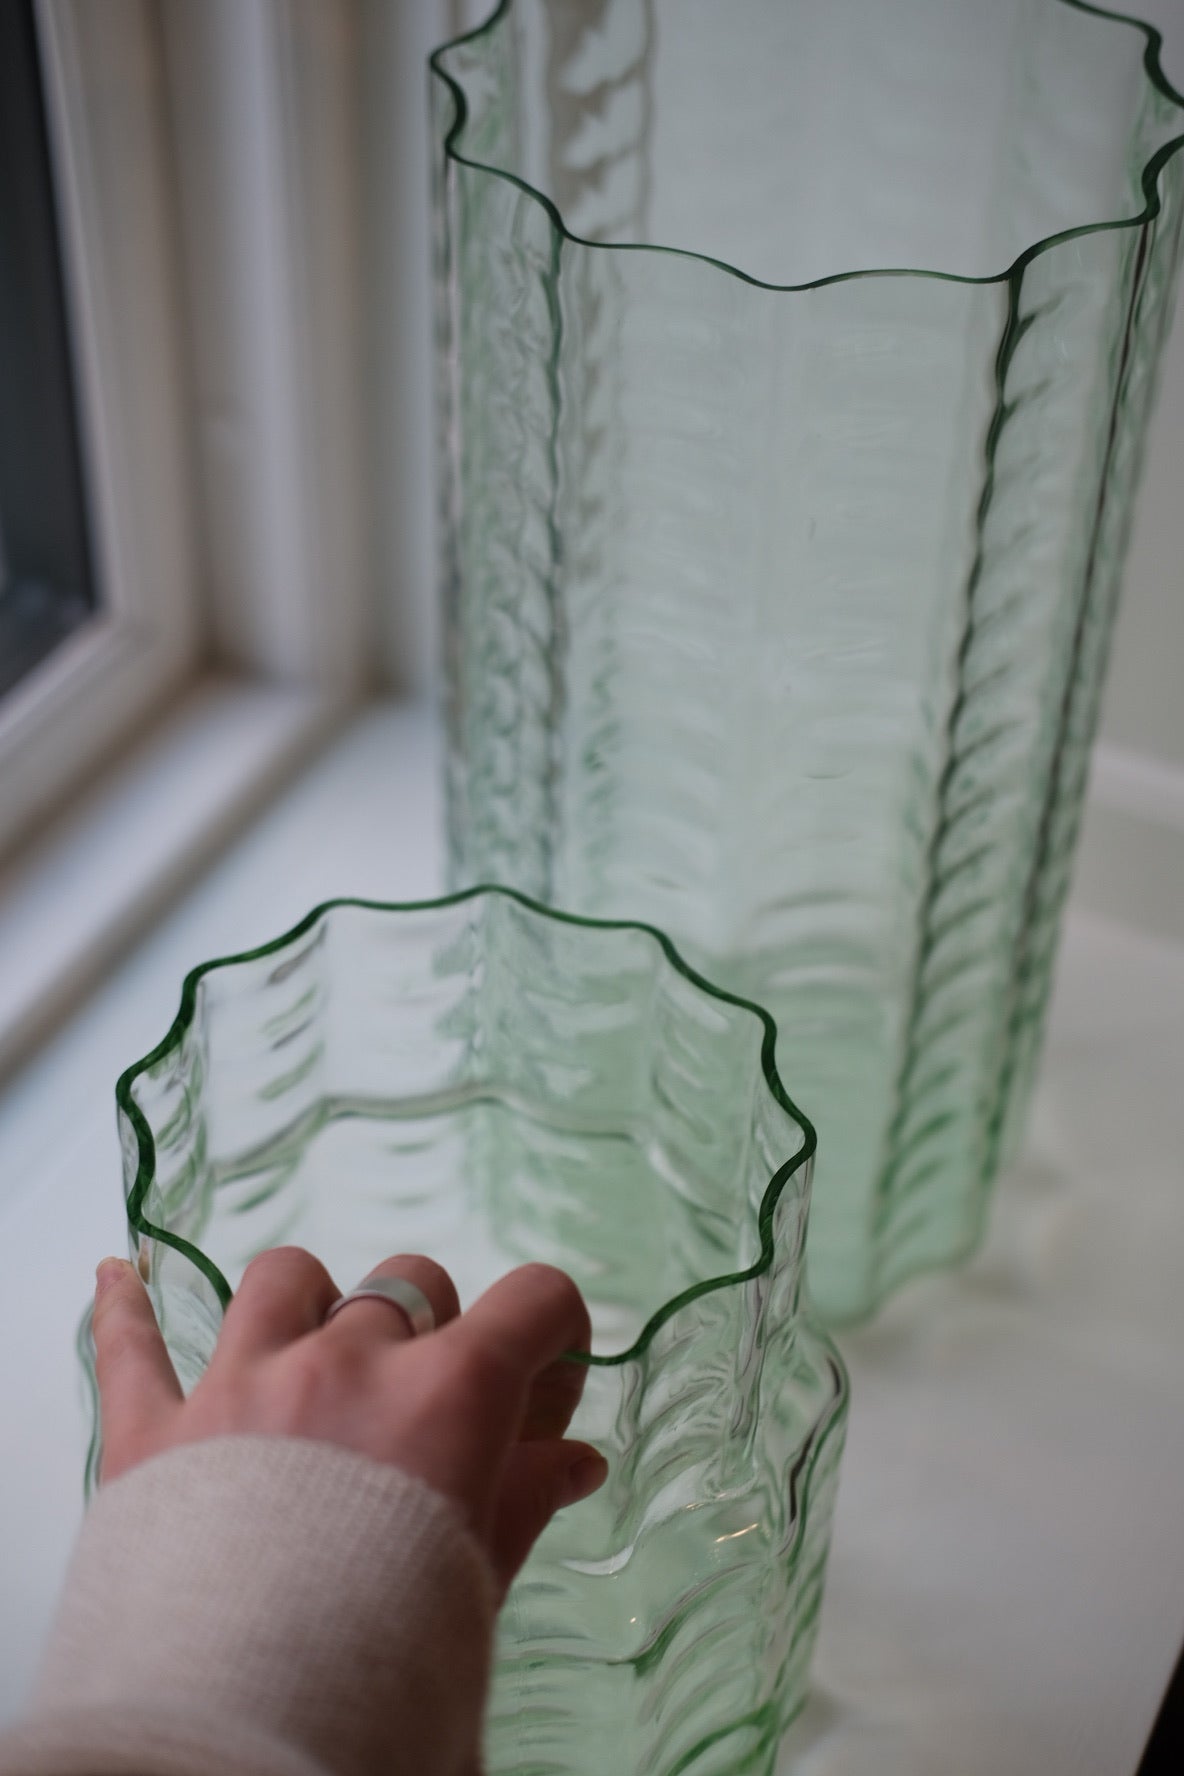 Vase • Glas • Transparent Grøn • Mellem